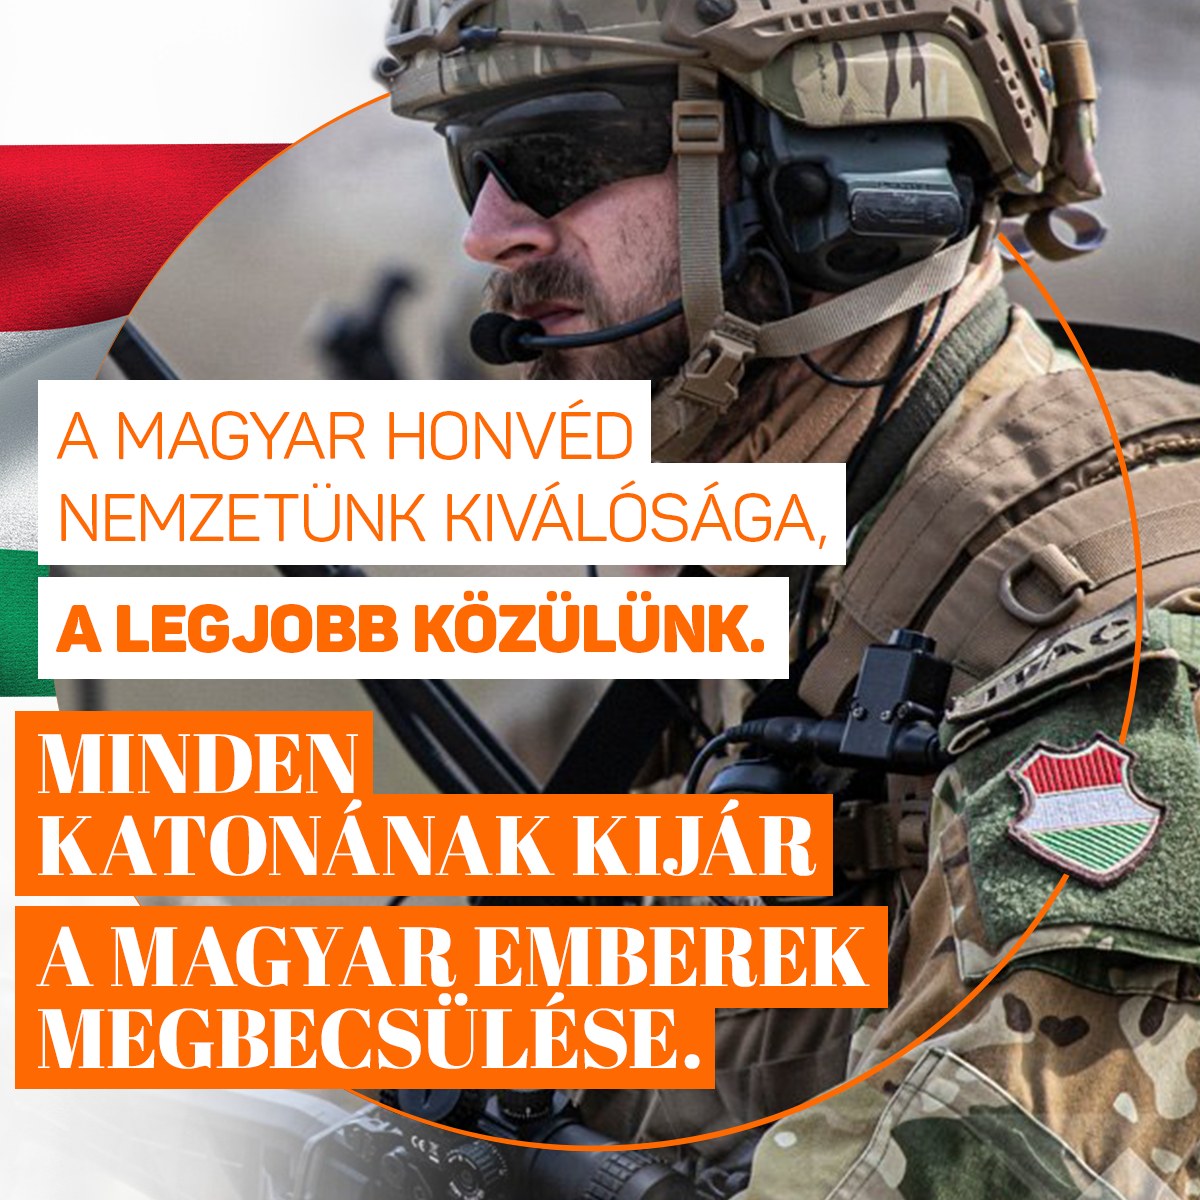 „Száz éve akarják elhitetni velünk, magyarokkal, hogy a magyar katona semmire se való, s ha lehet, ne is lássunk egyet sem. Ideje kimondanunk: a magyar honvéd nemzetünk kiválósága, a legjobb közülünk, ezért minden katonának kijár a magyar emberek megbecsülése” – Orbán Viktor.